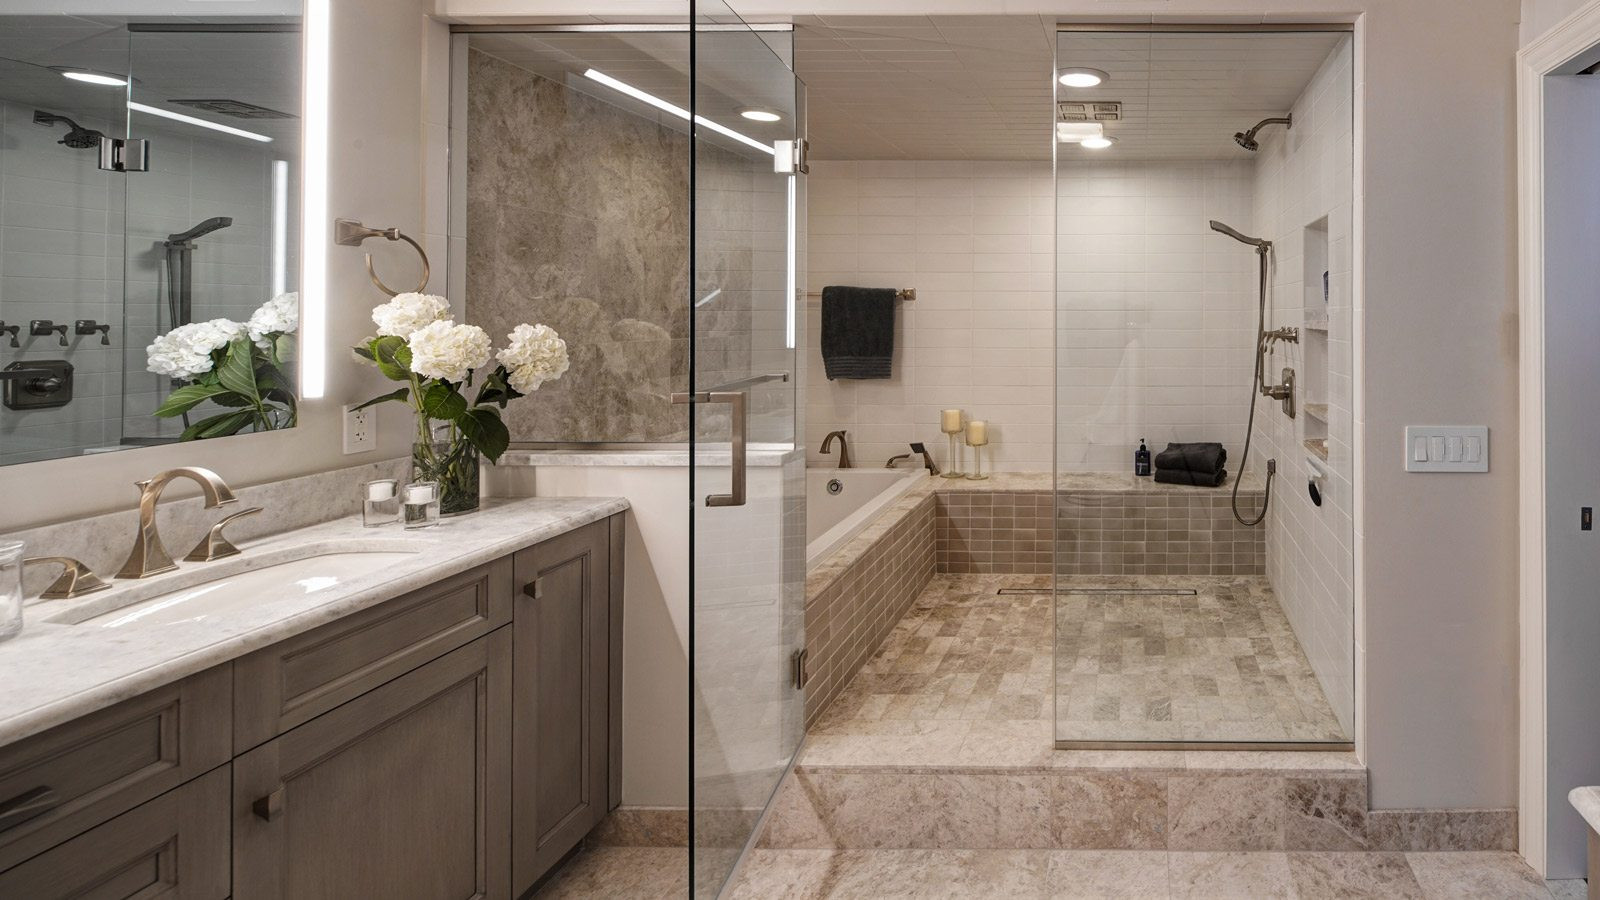 Master Bathroom Design
 Chicago Condo Master Bath Renovation Drury Design